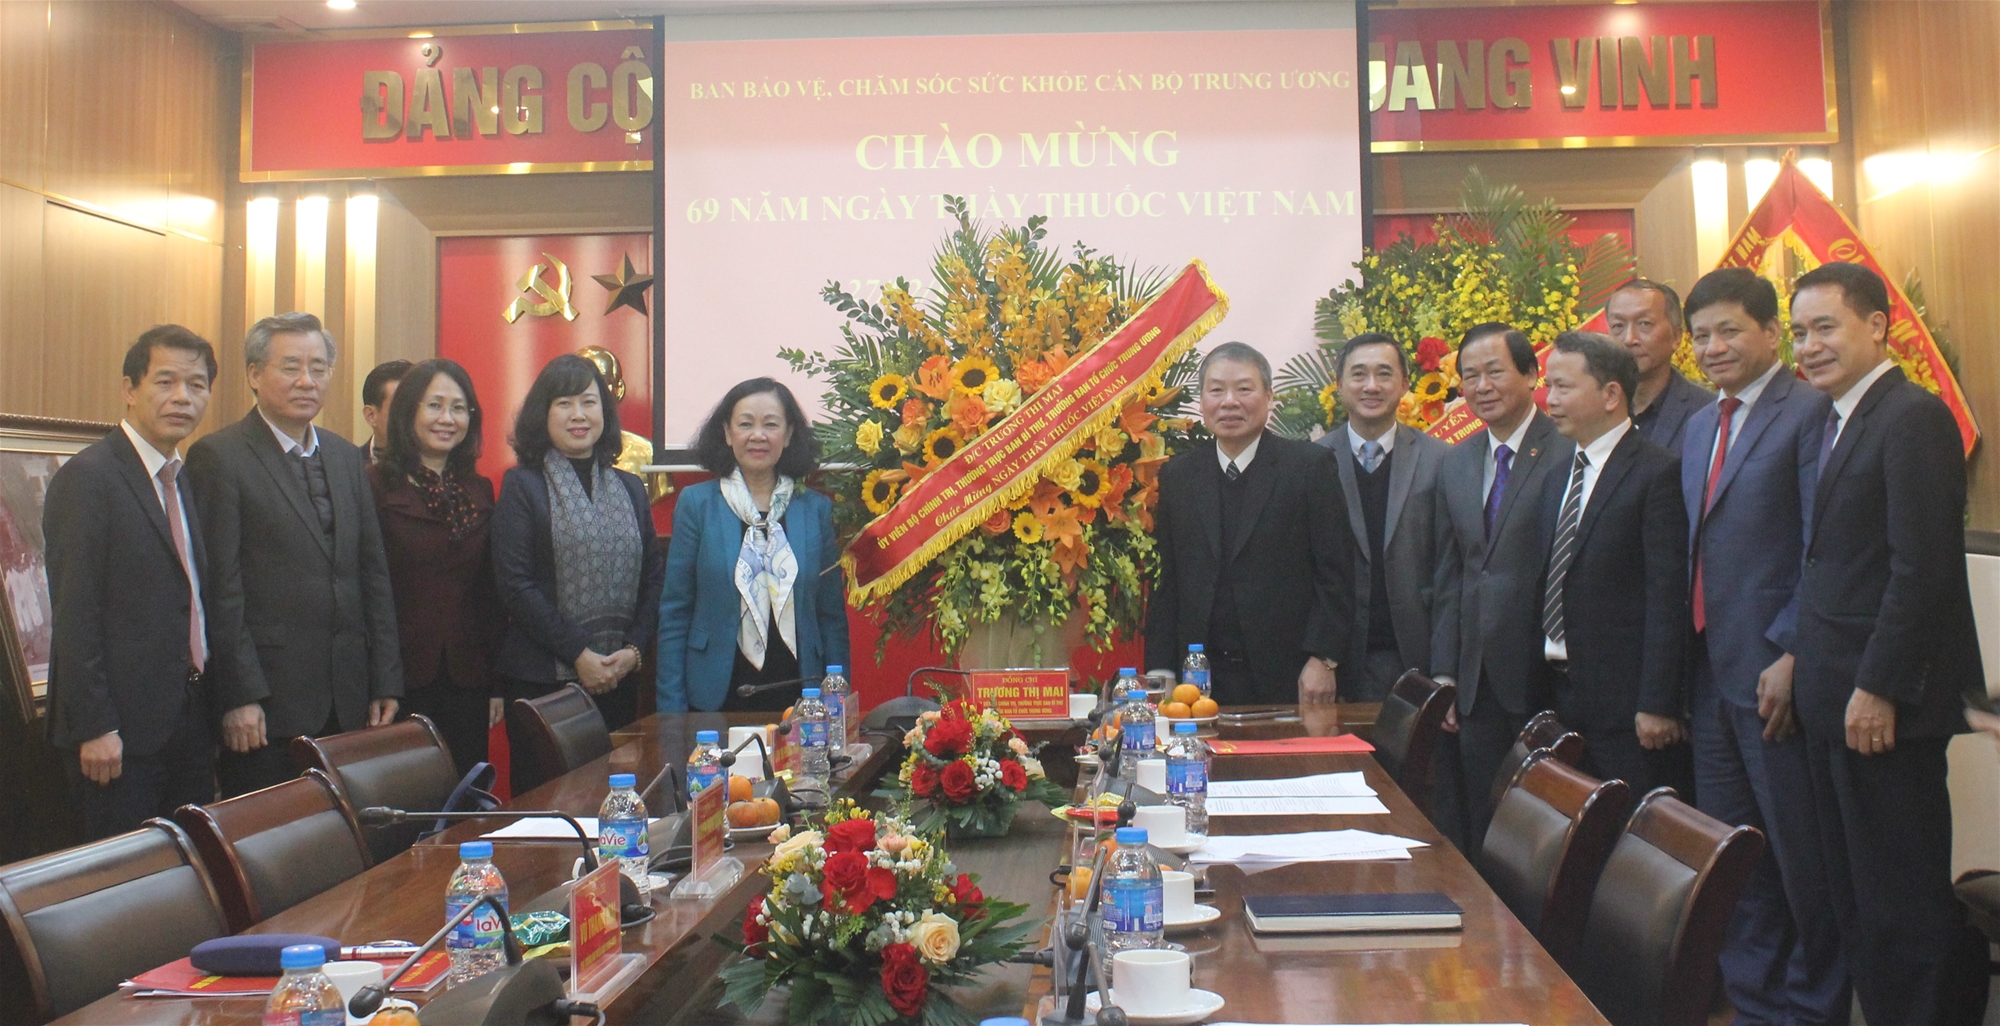 Đồng chí Trương Thị Mai thăm và làm việc với Ban Bảo vệ, chăm sóc sức khỏe cán bộ Trung ương